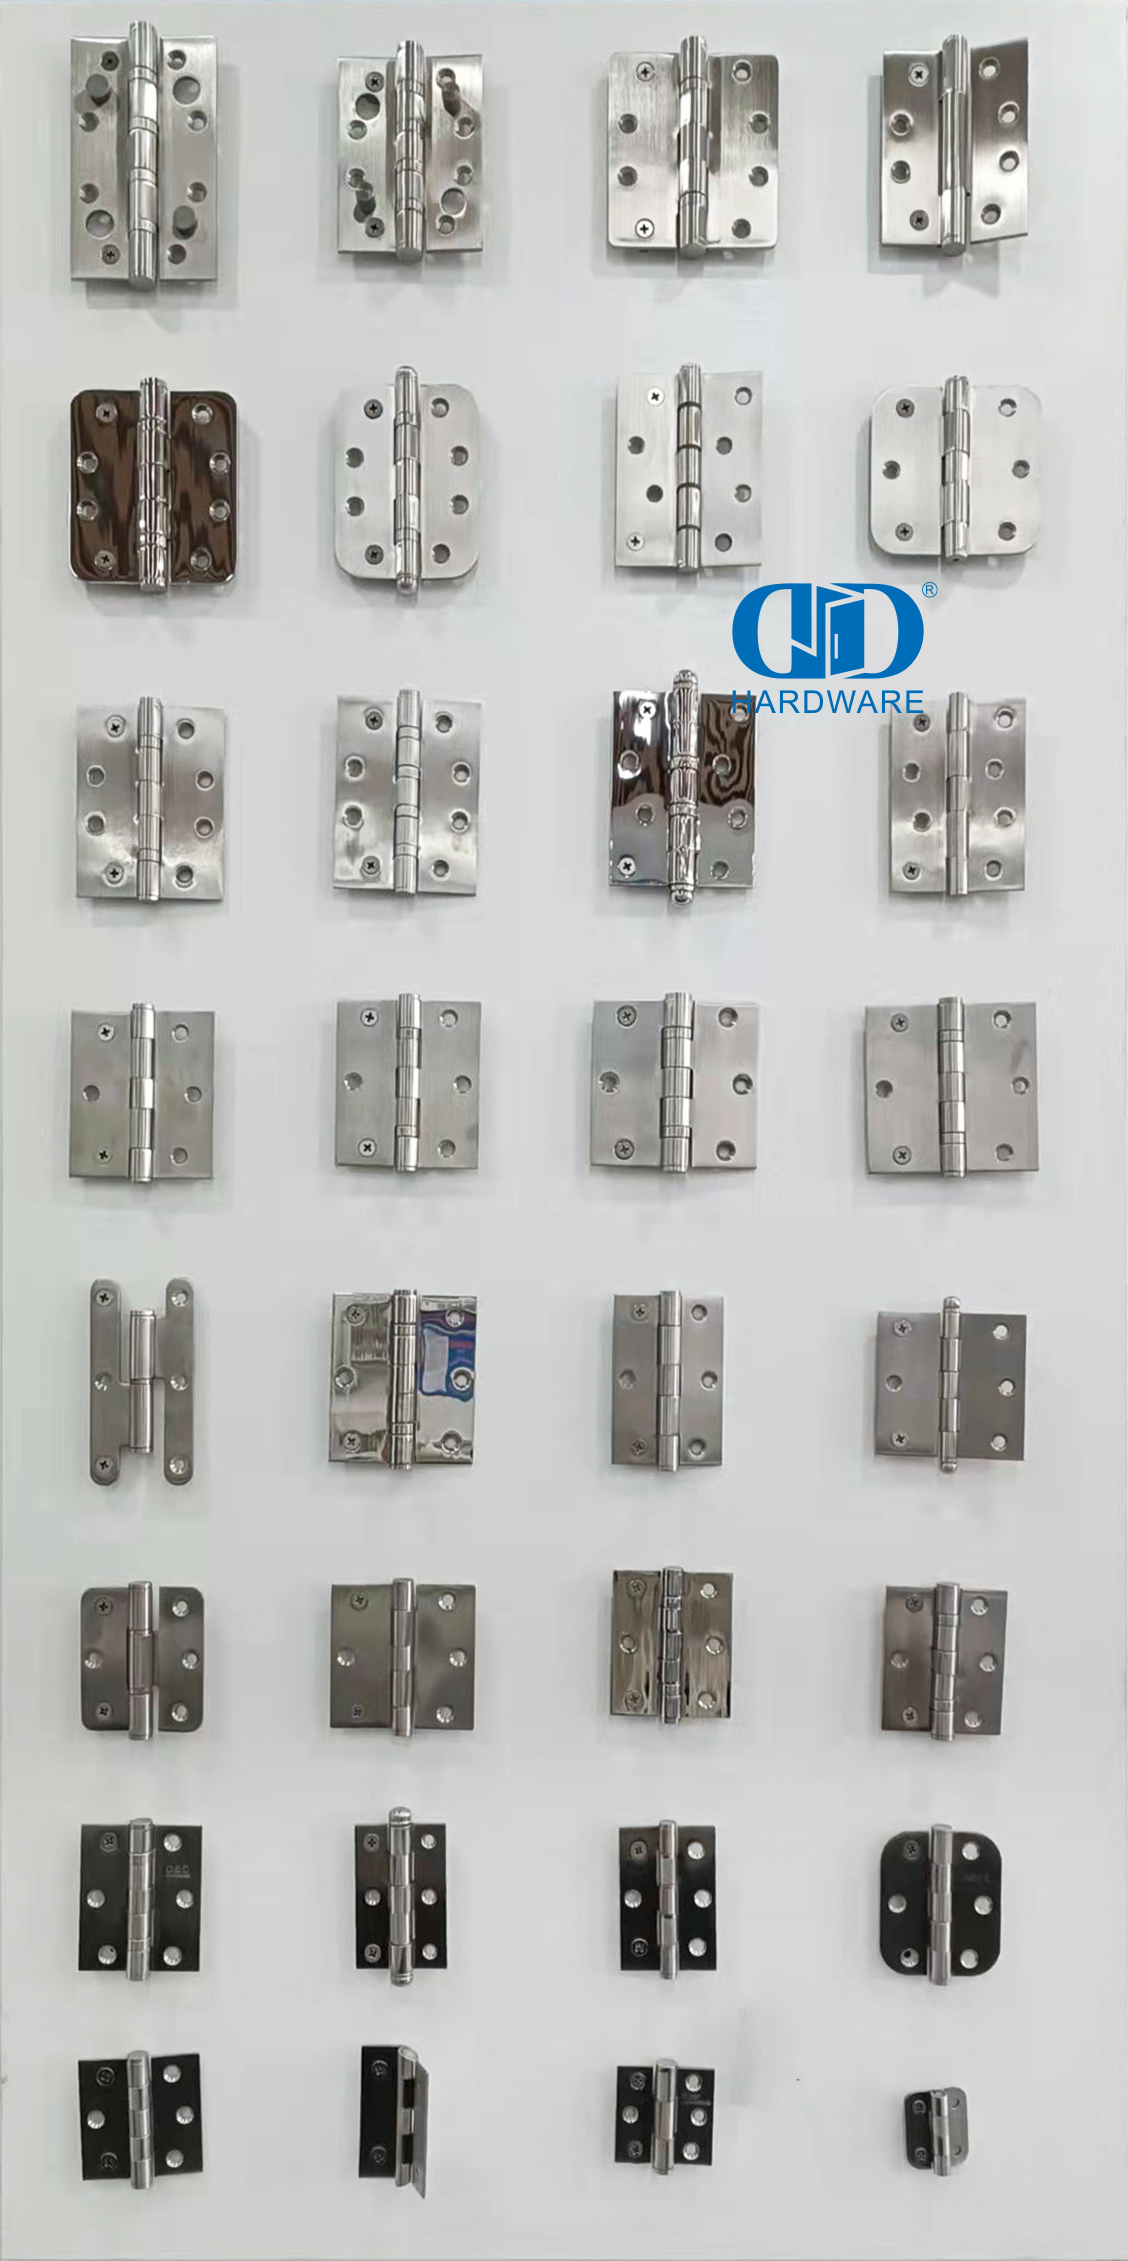 Engsel Pintu Tip Rumah Sakit Stainless Steel Tahan Lama untuk Proyek Perawatan Kesehatan-DDSS044-B-4x3x3.0mm